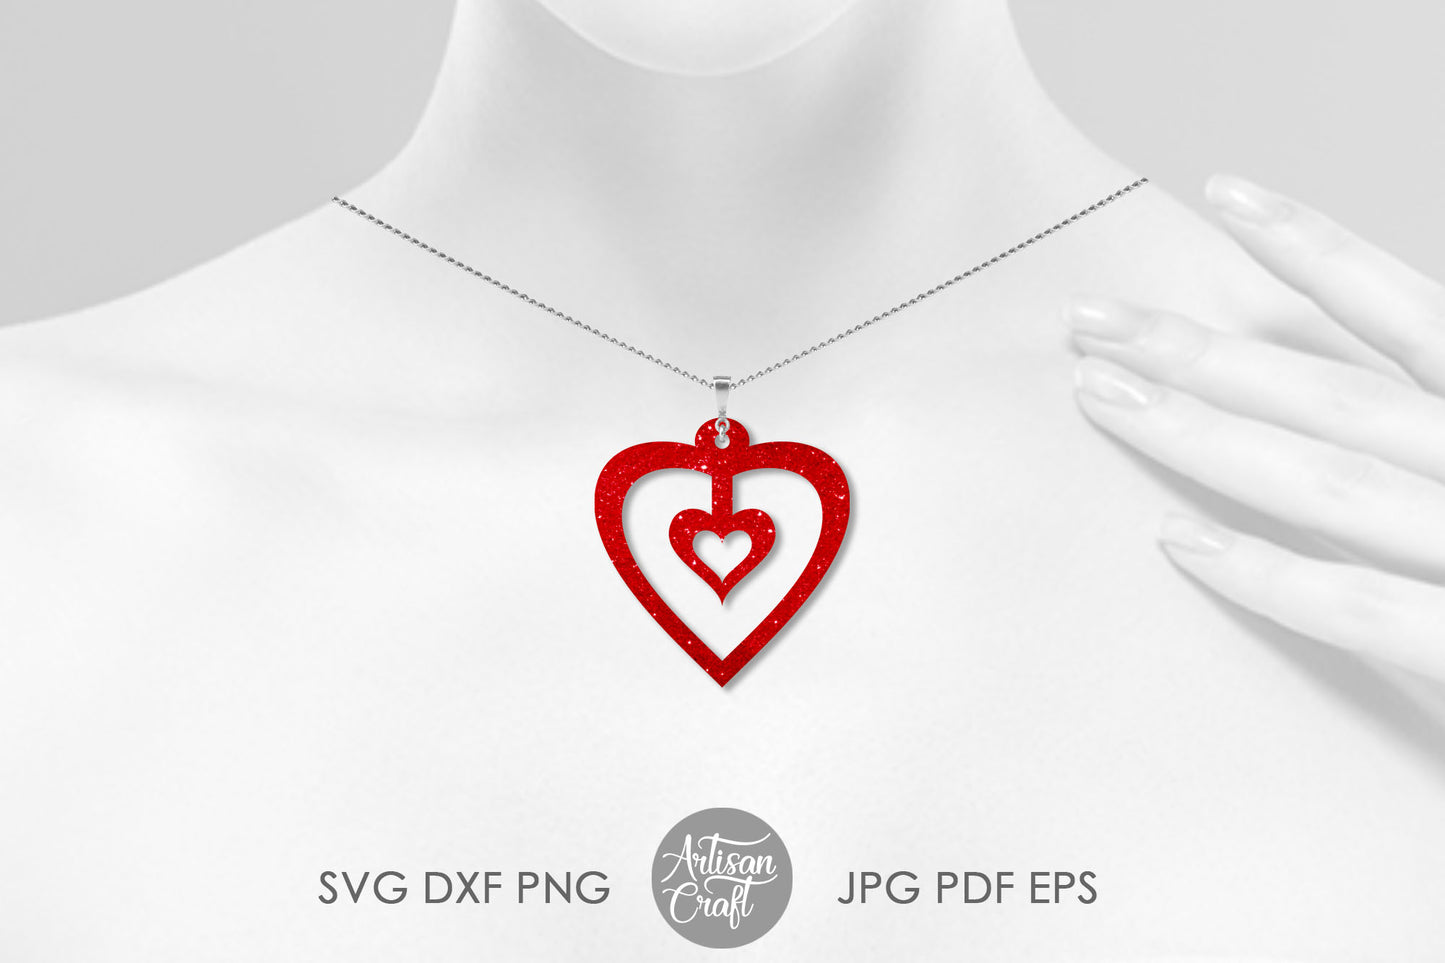 Heart earrings SVG